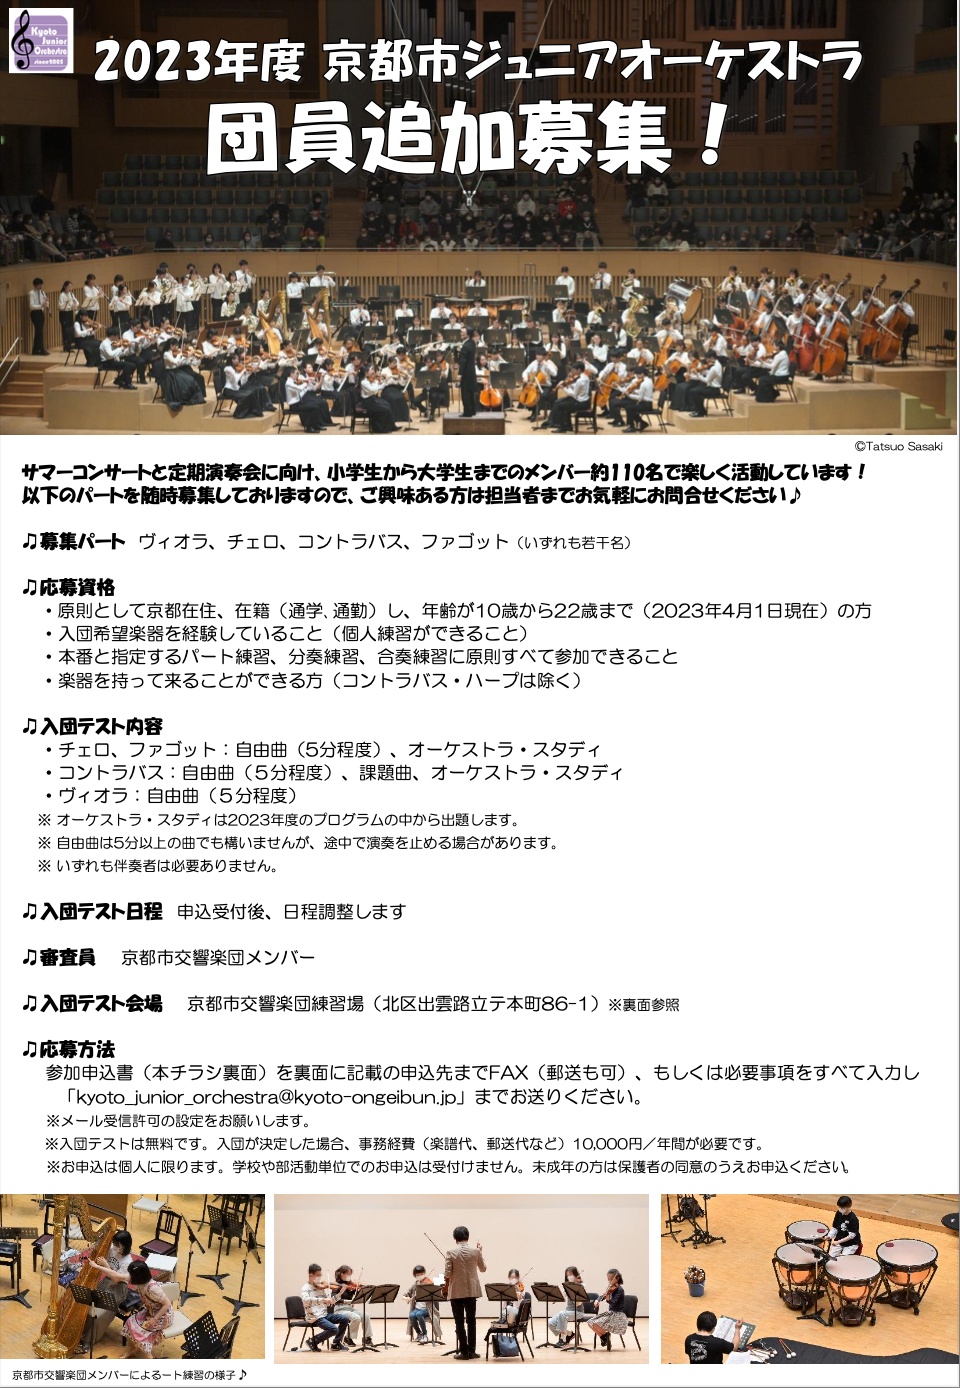 2023年度 京都市ジュニアオーケストラ 団員募集